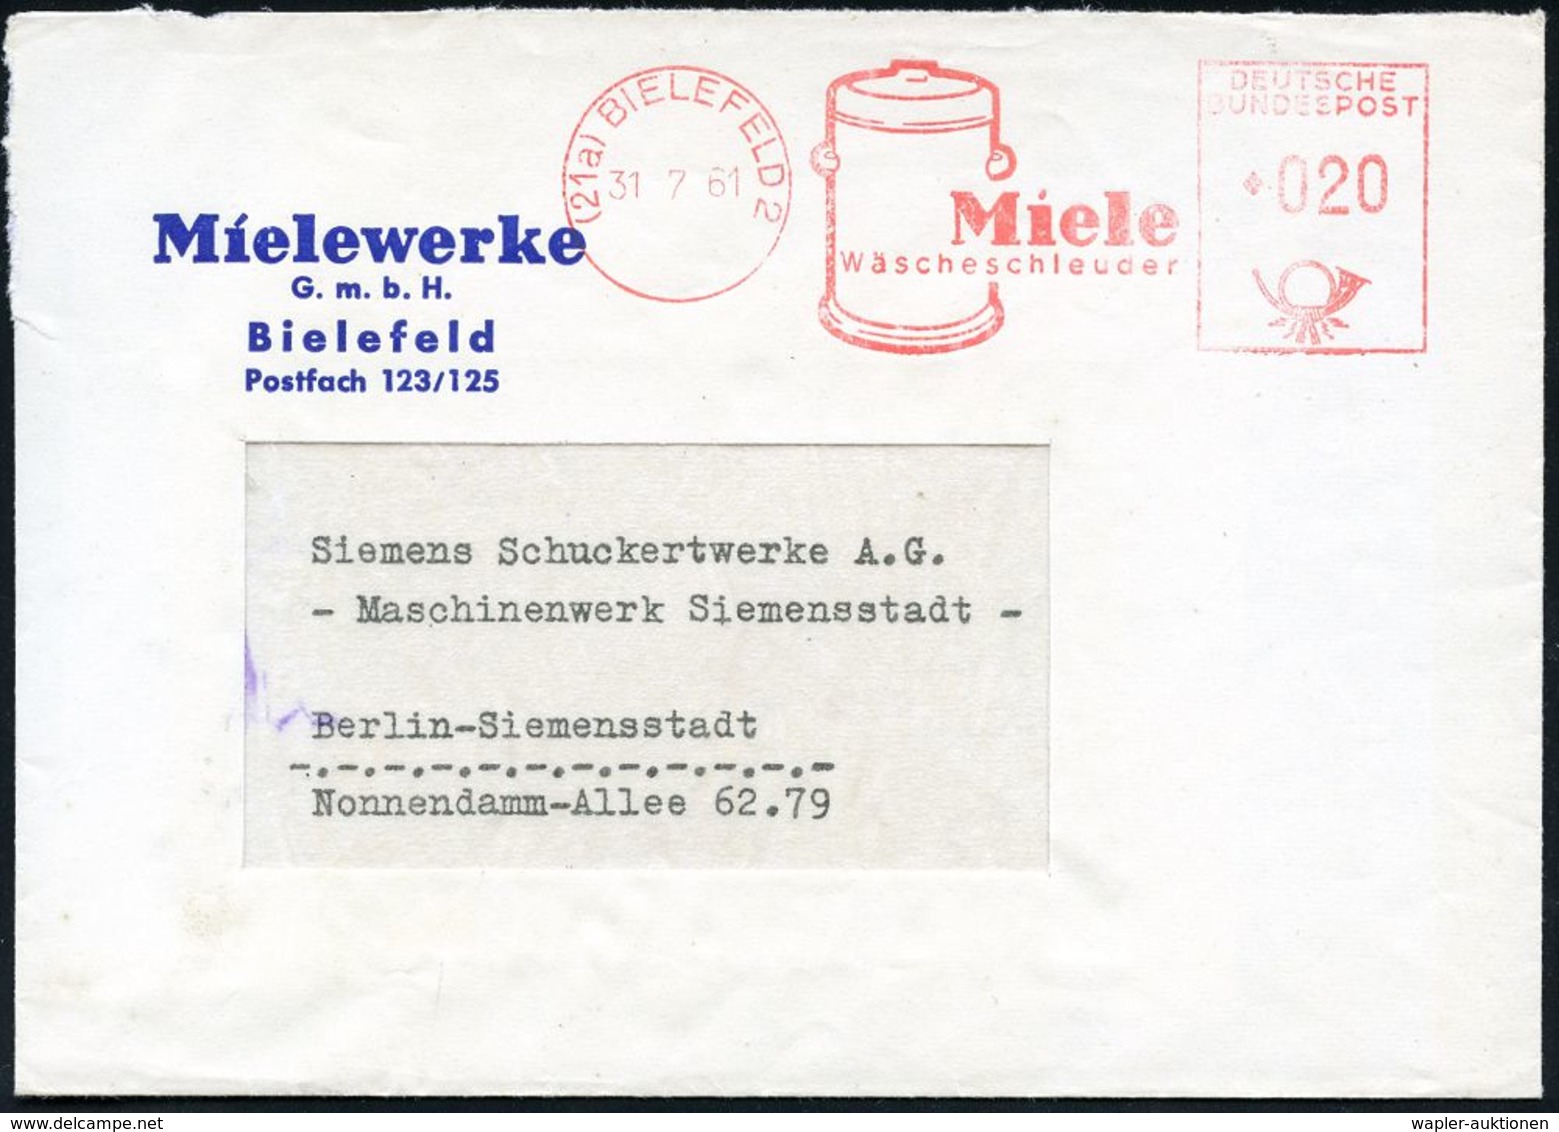 ELEKTRISCHE APPARATE & MASCHINEN : (21a) BIELEFELD 2/ Miele/ Wäscheschleuder 1961 (31.7.) Dekorat. AFS = Wäscheschleuder - Elettricità